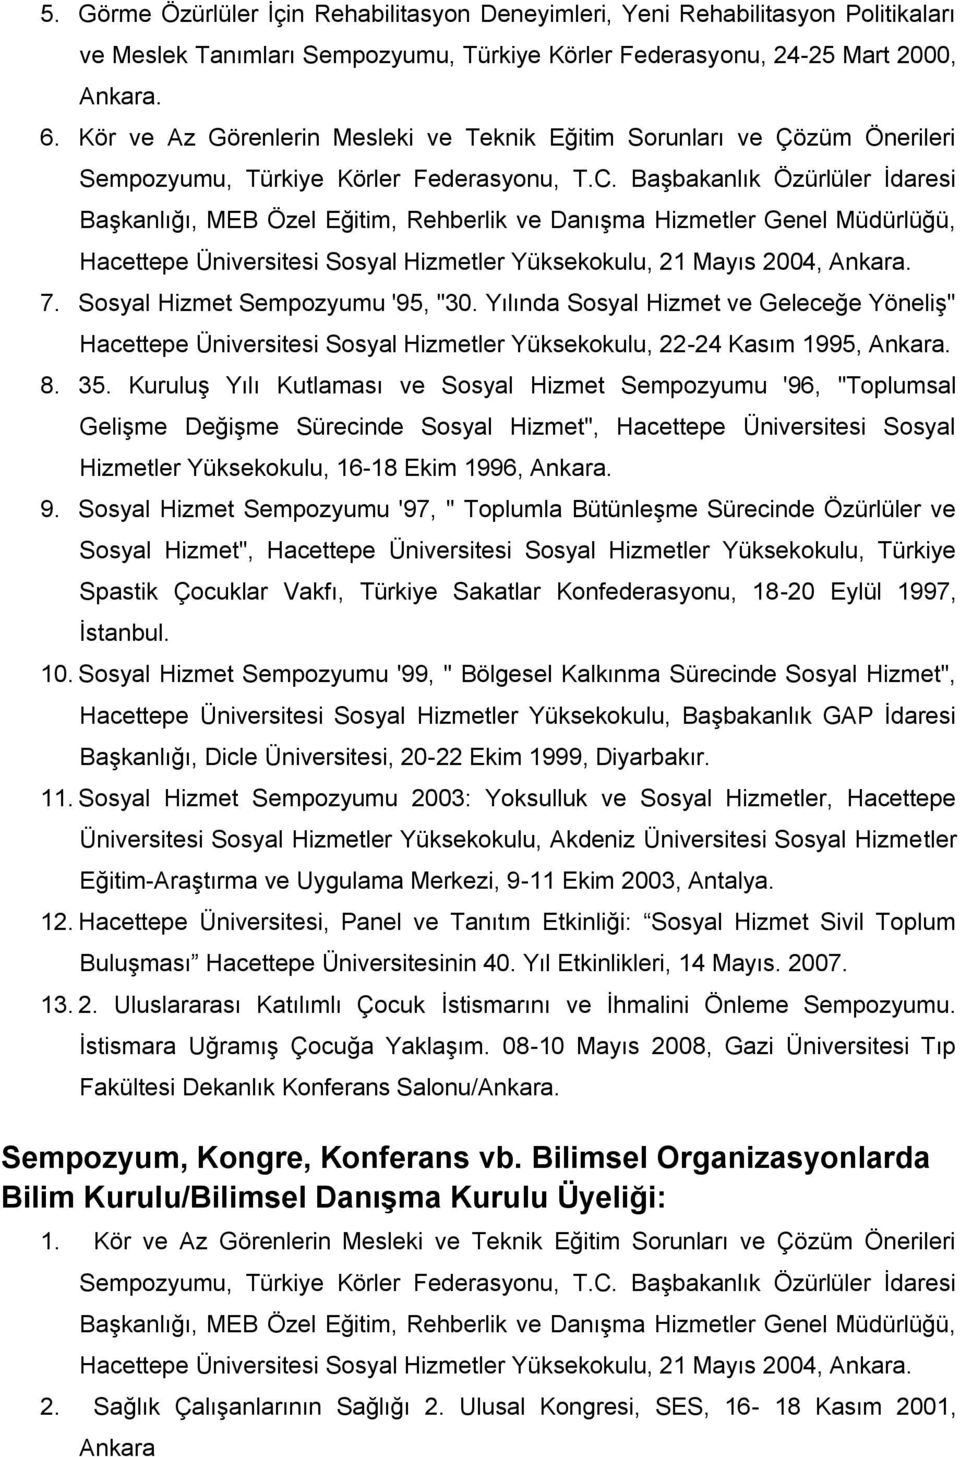 Başbakanlık Özürlüler İdaresi Başkanlığı, MEB Özel Eğitim, Rehberlik ve Danışma Hizmetler Genel Müdürlüğü, Hacettepe Üniversitesi Sosyal Hizmetler Yüksekokulu, 21 Mayıs 2004, Ankara. 7.